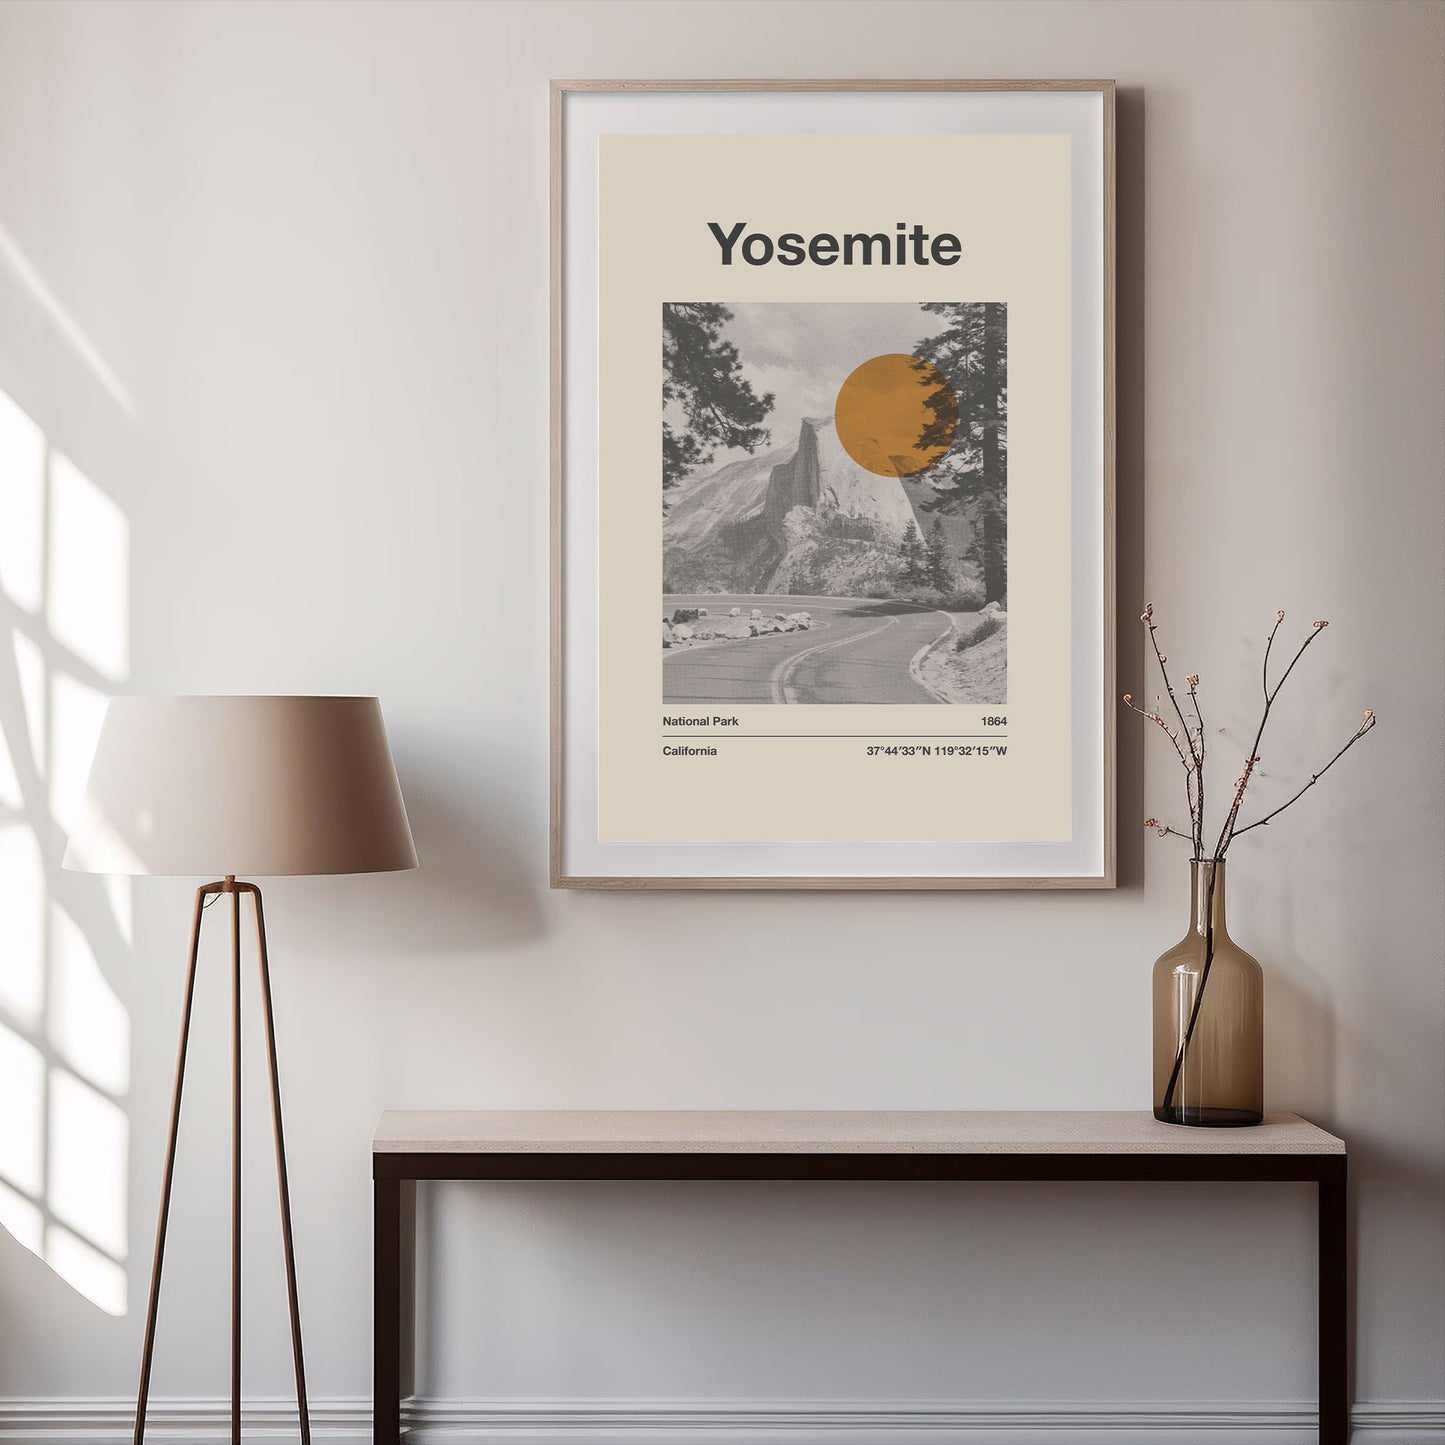 Yosemite National Park - Print Material - national park prints, Yosemite, Yosemite National Park